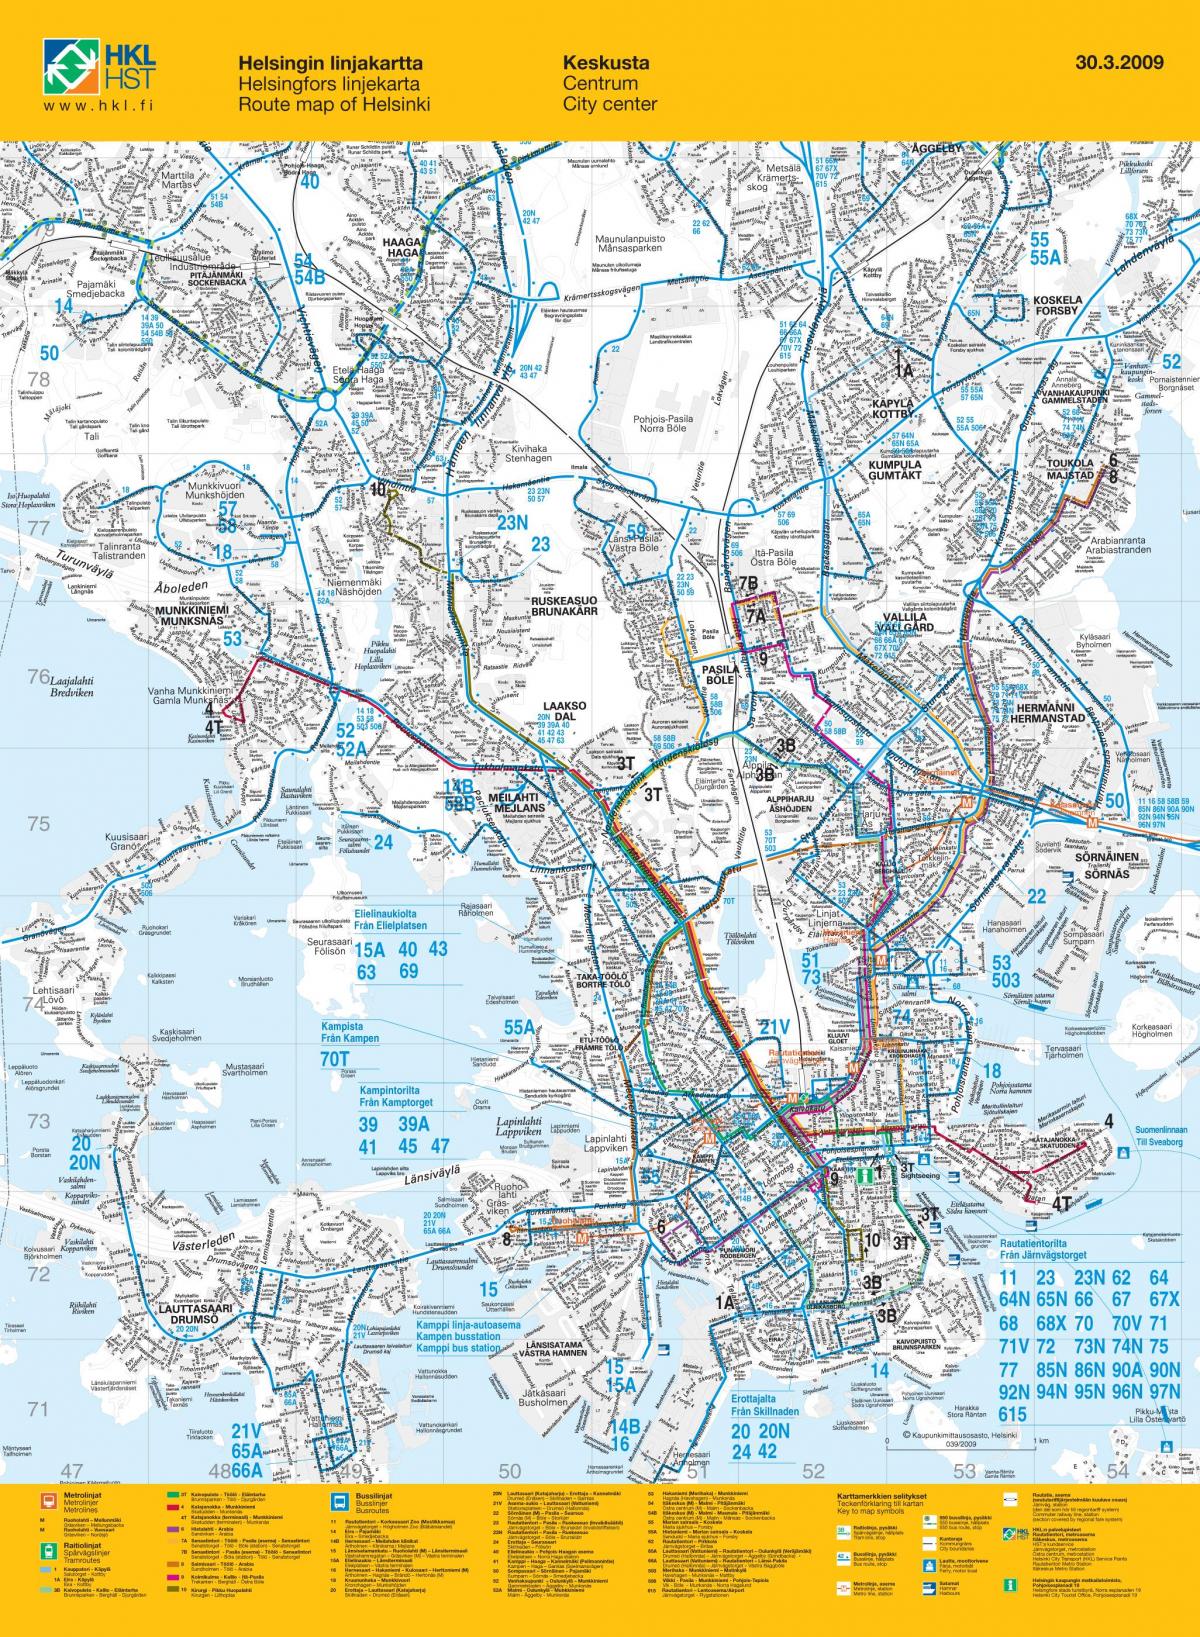 赫尔辛基汽车站地图